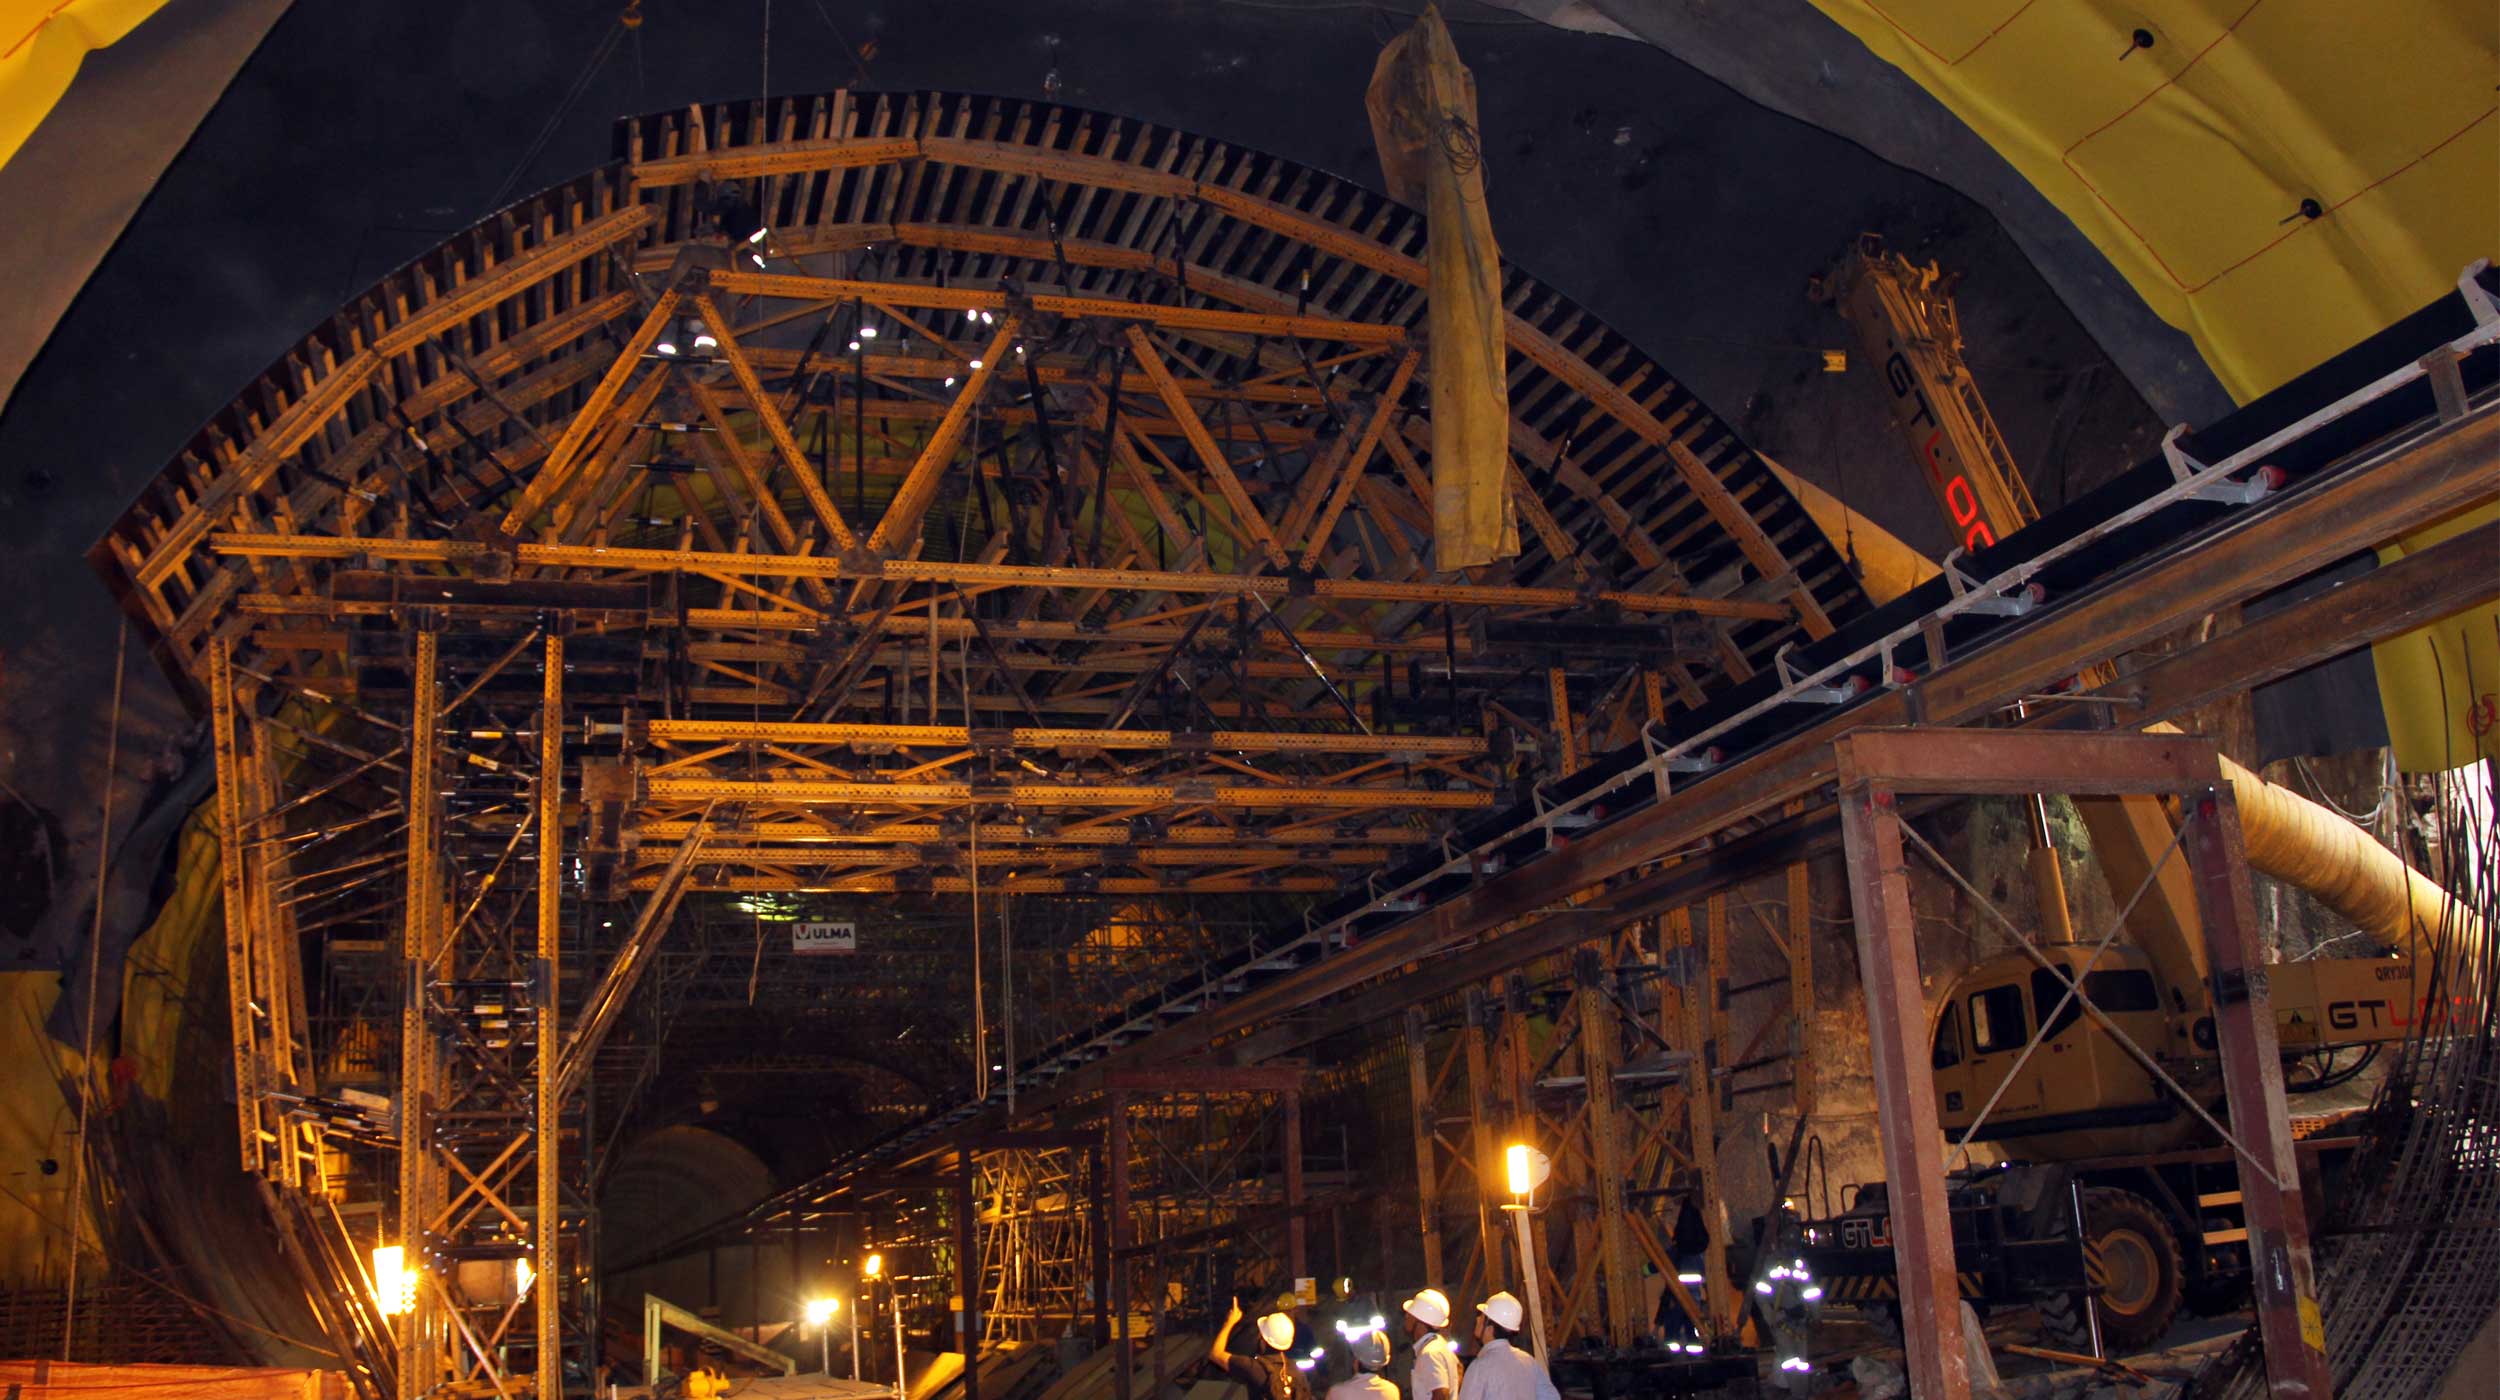 ULMA verfügt über umfangreiche Erfahrungen im Bau von U-Bahn- Linien und hat 700 Tonnen Schalung, Traggerüste und Gerüste für den Bau der Linie 5 der Metro in São Paulo geliefert.